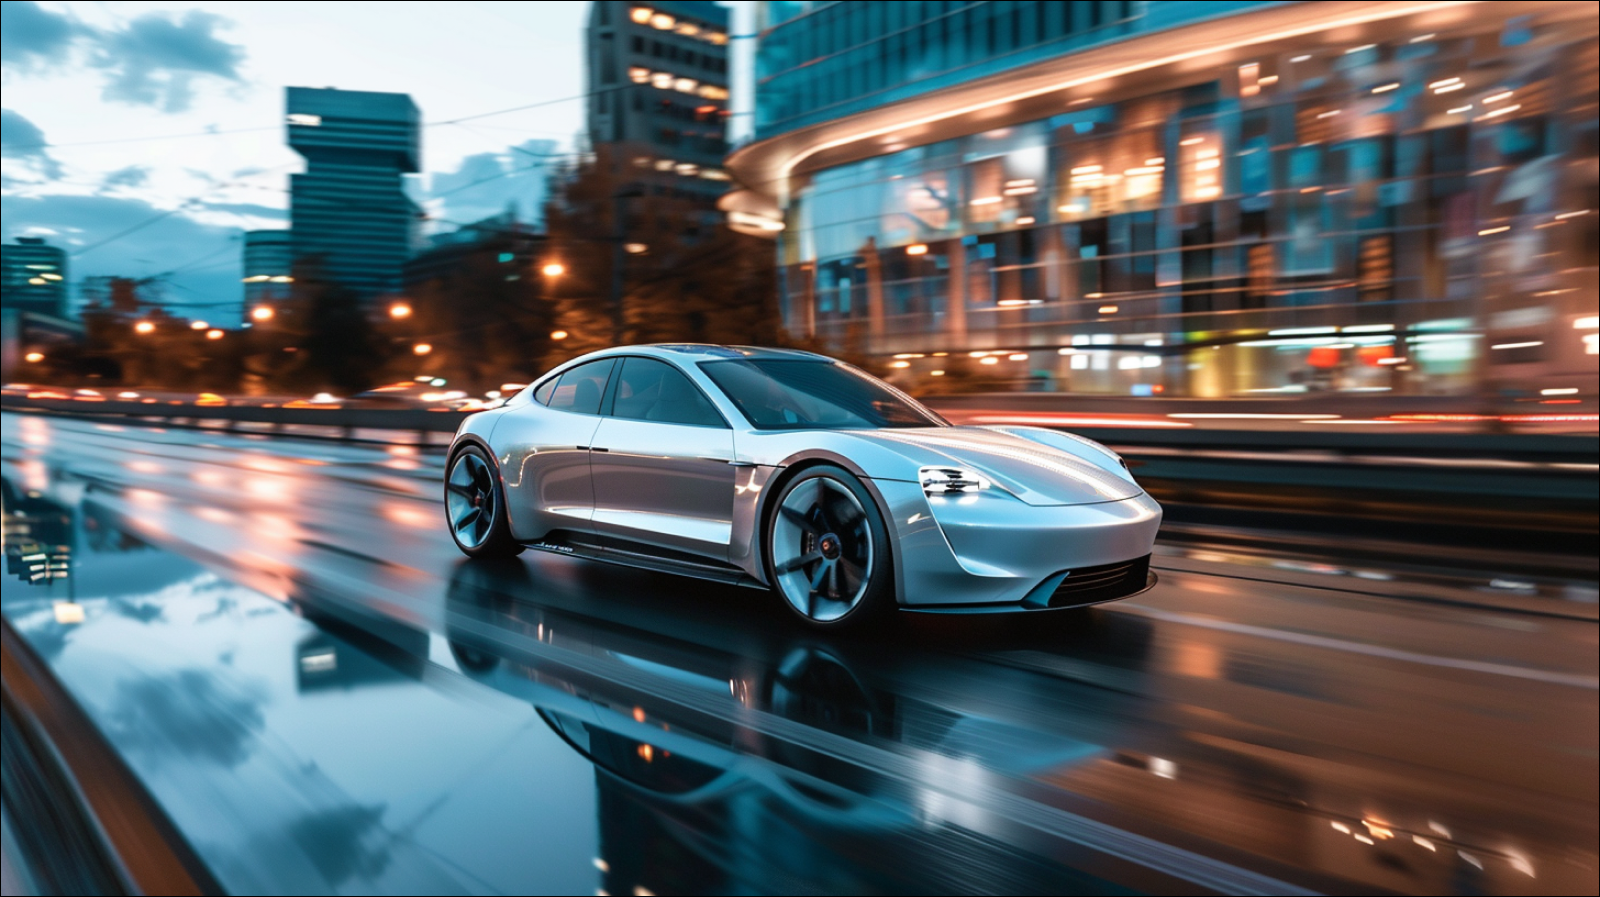 Ein silbernes Elektroauto fährt auf einer Stadtstraße und spiegelt in seinem glänzenden Äußeren die moderne Umgebung wider